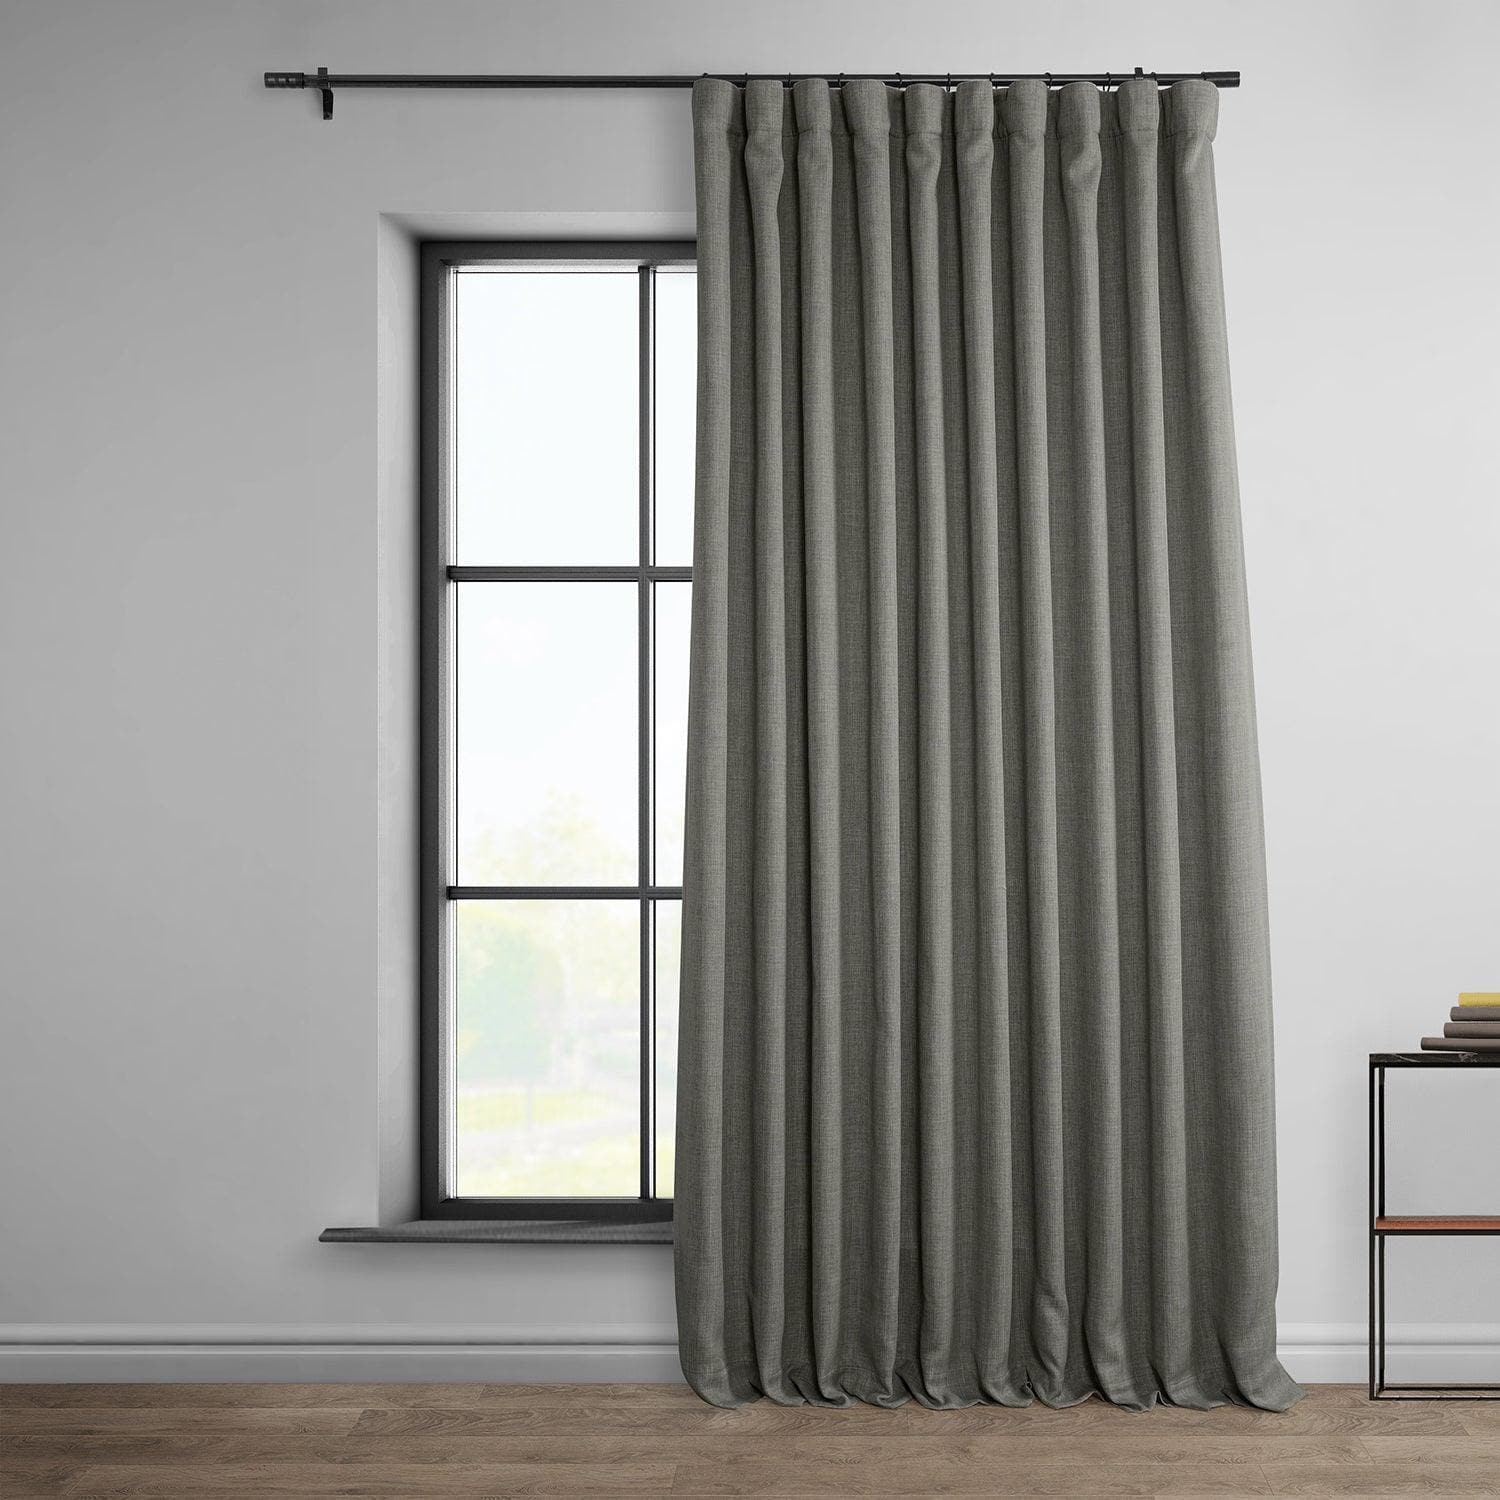 Blazer Grey Extra Wide Textured Faux Linen Room Darkening Curtain